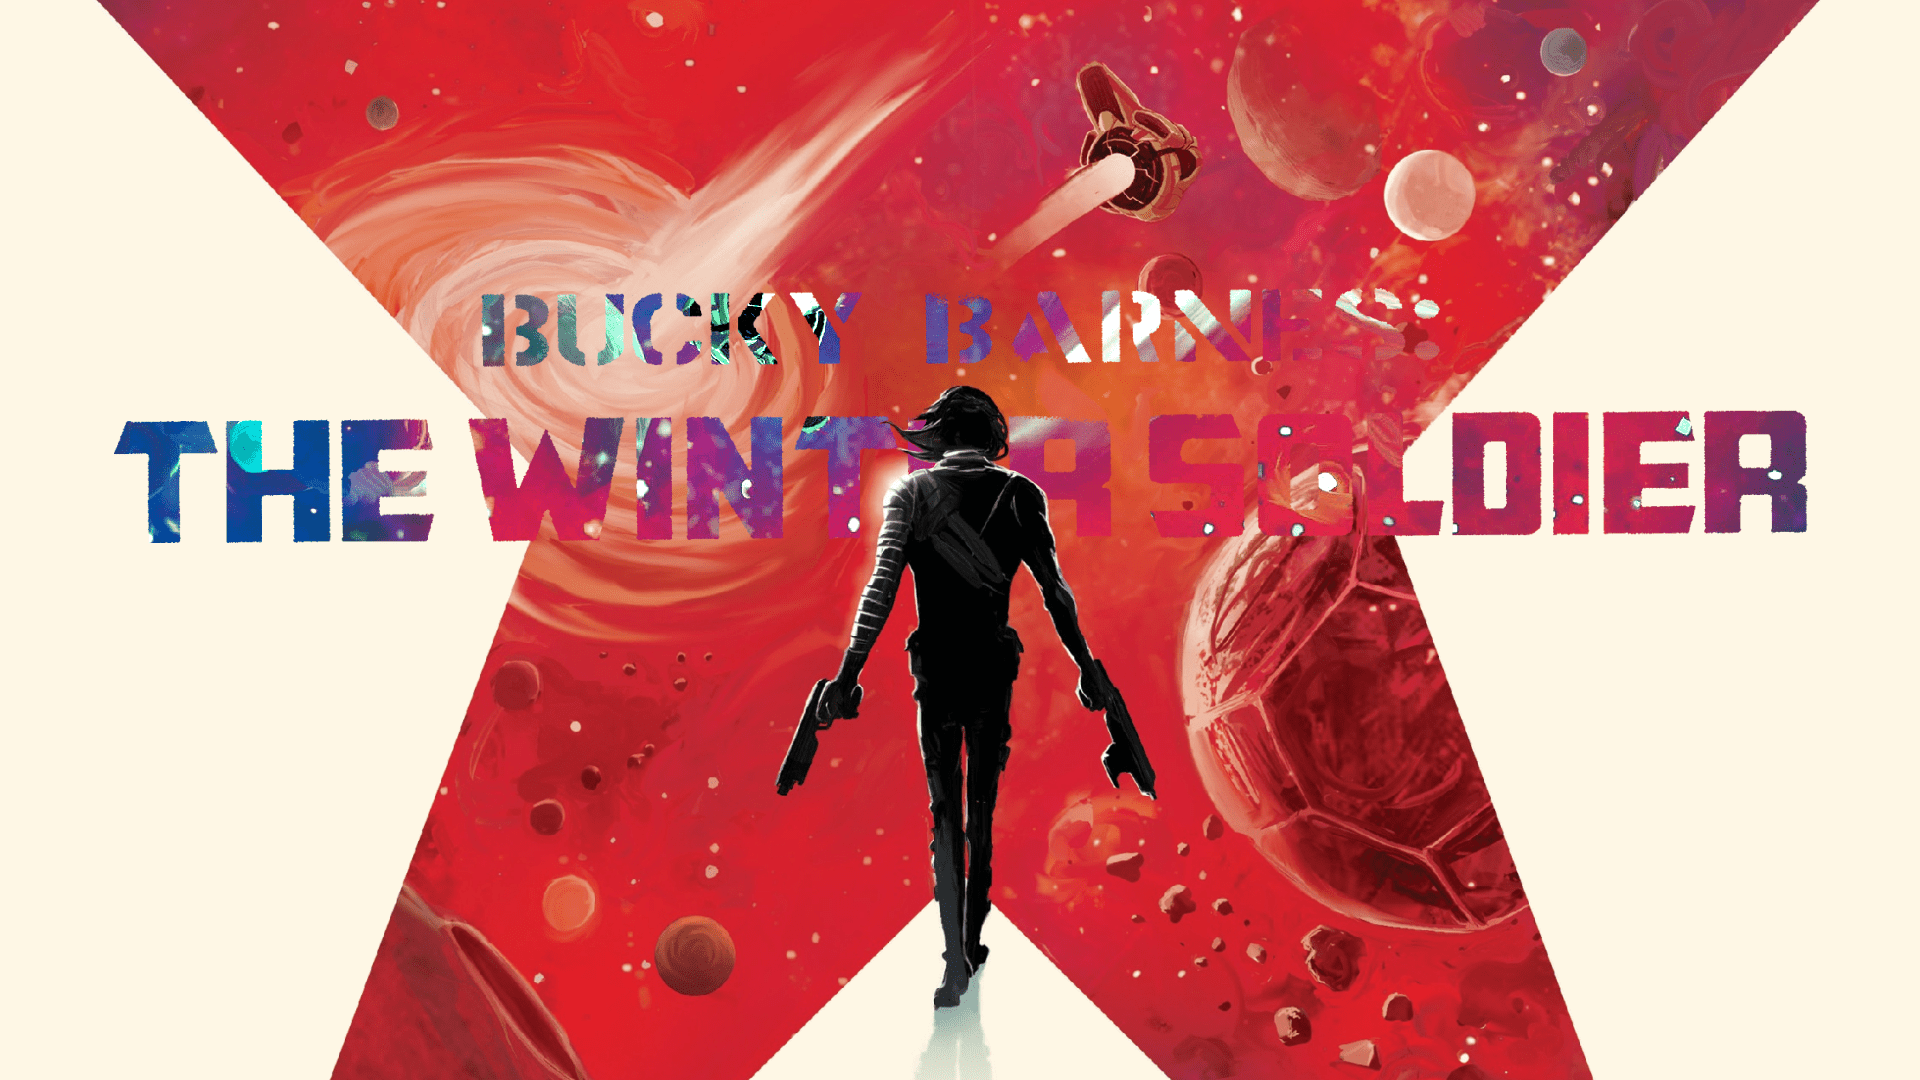 Bucky Barnes: The Winter Soldier wallpaper 2560x1440. - Bucky Barnes